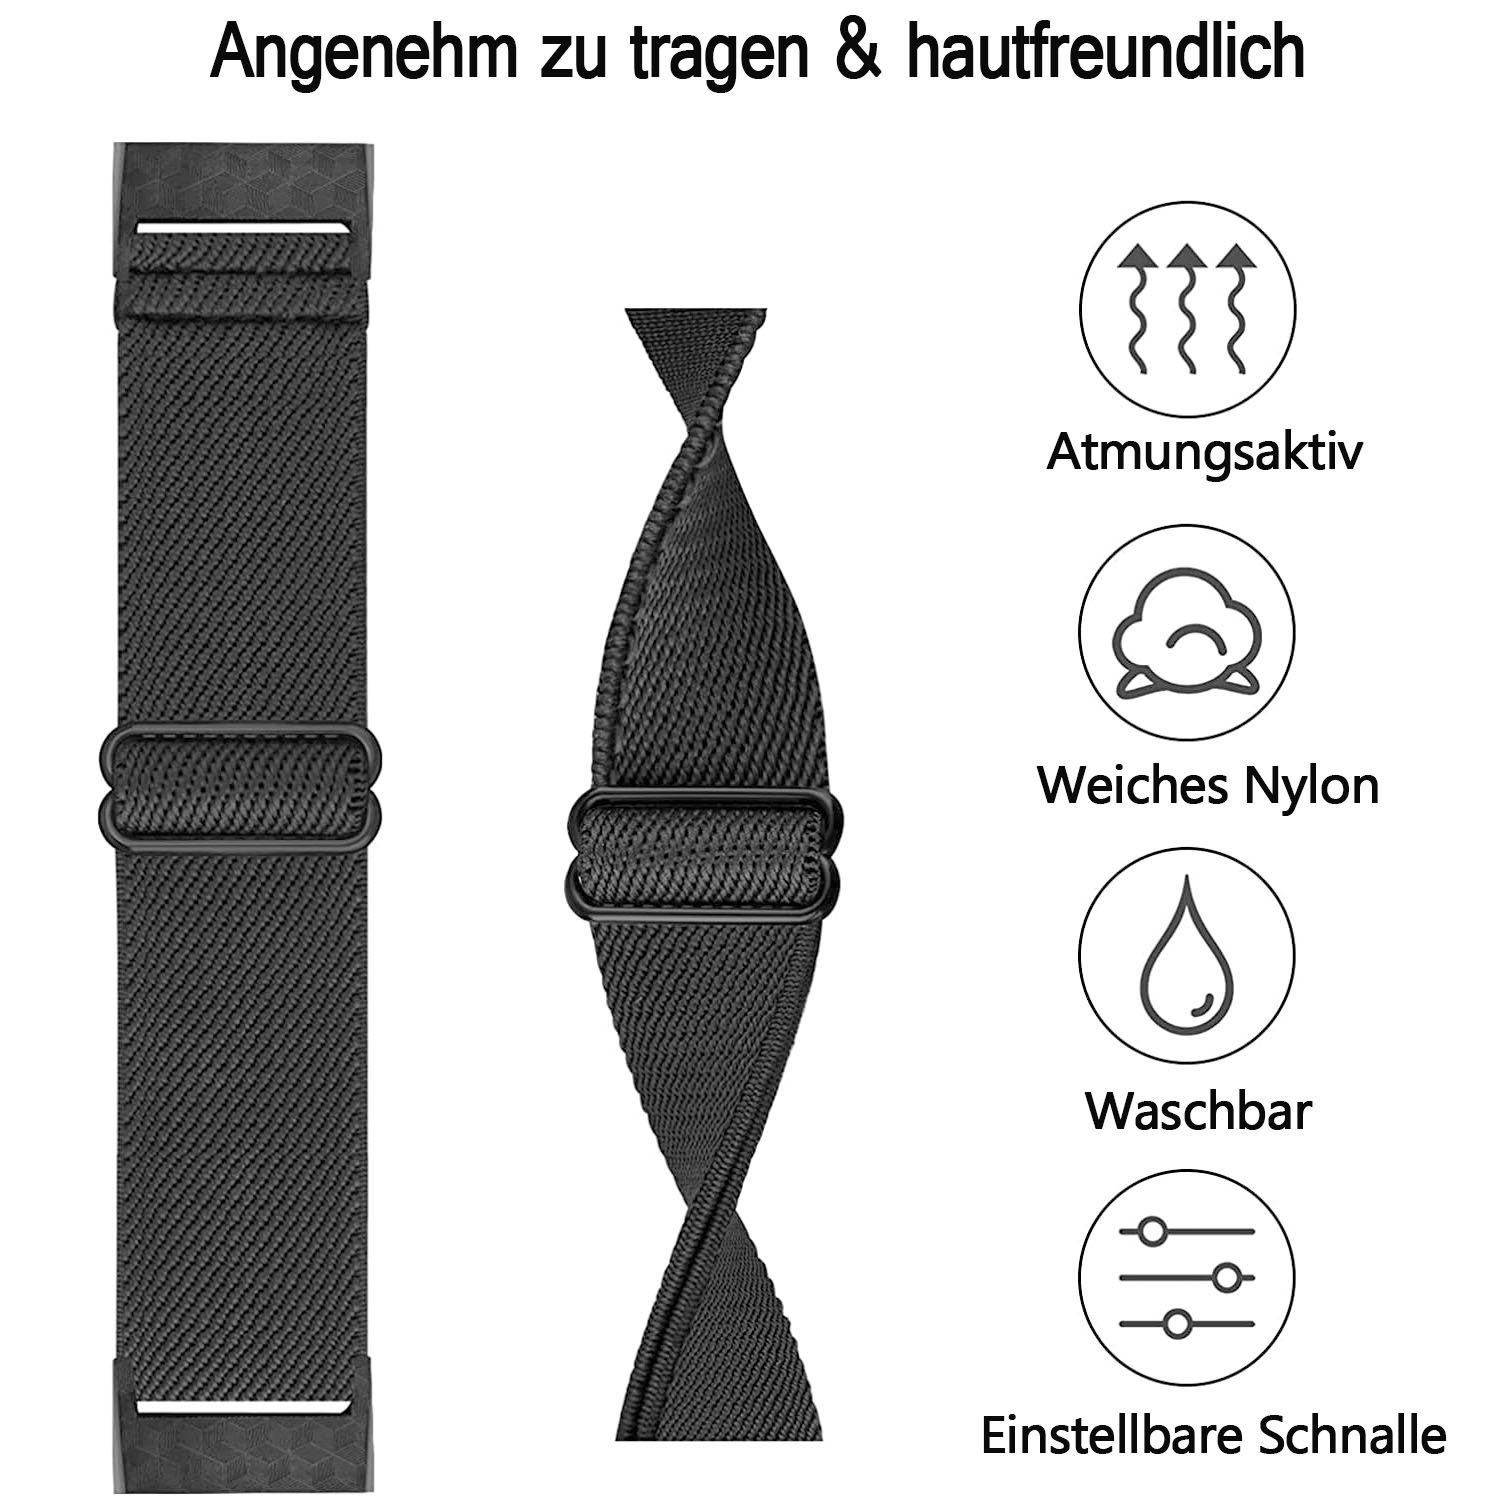 Kein Uhr Onedream Strap Kompatible Für Fitbit Charge 4 Armband/Charge 3 Armbänder,Stoff Textil Sport Band Damen Herren Ersatzarmband